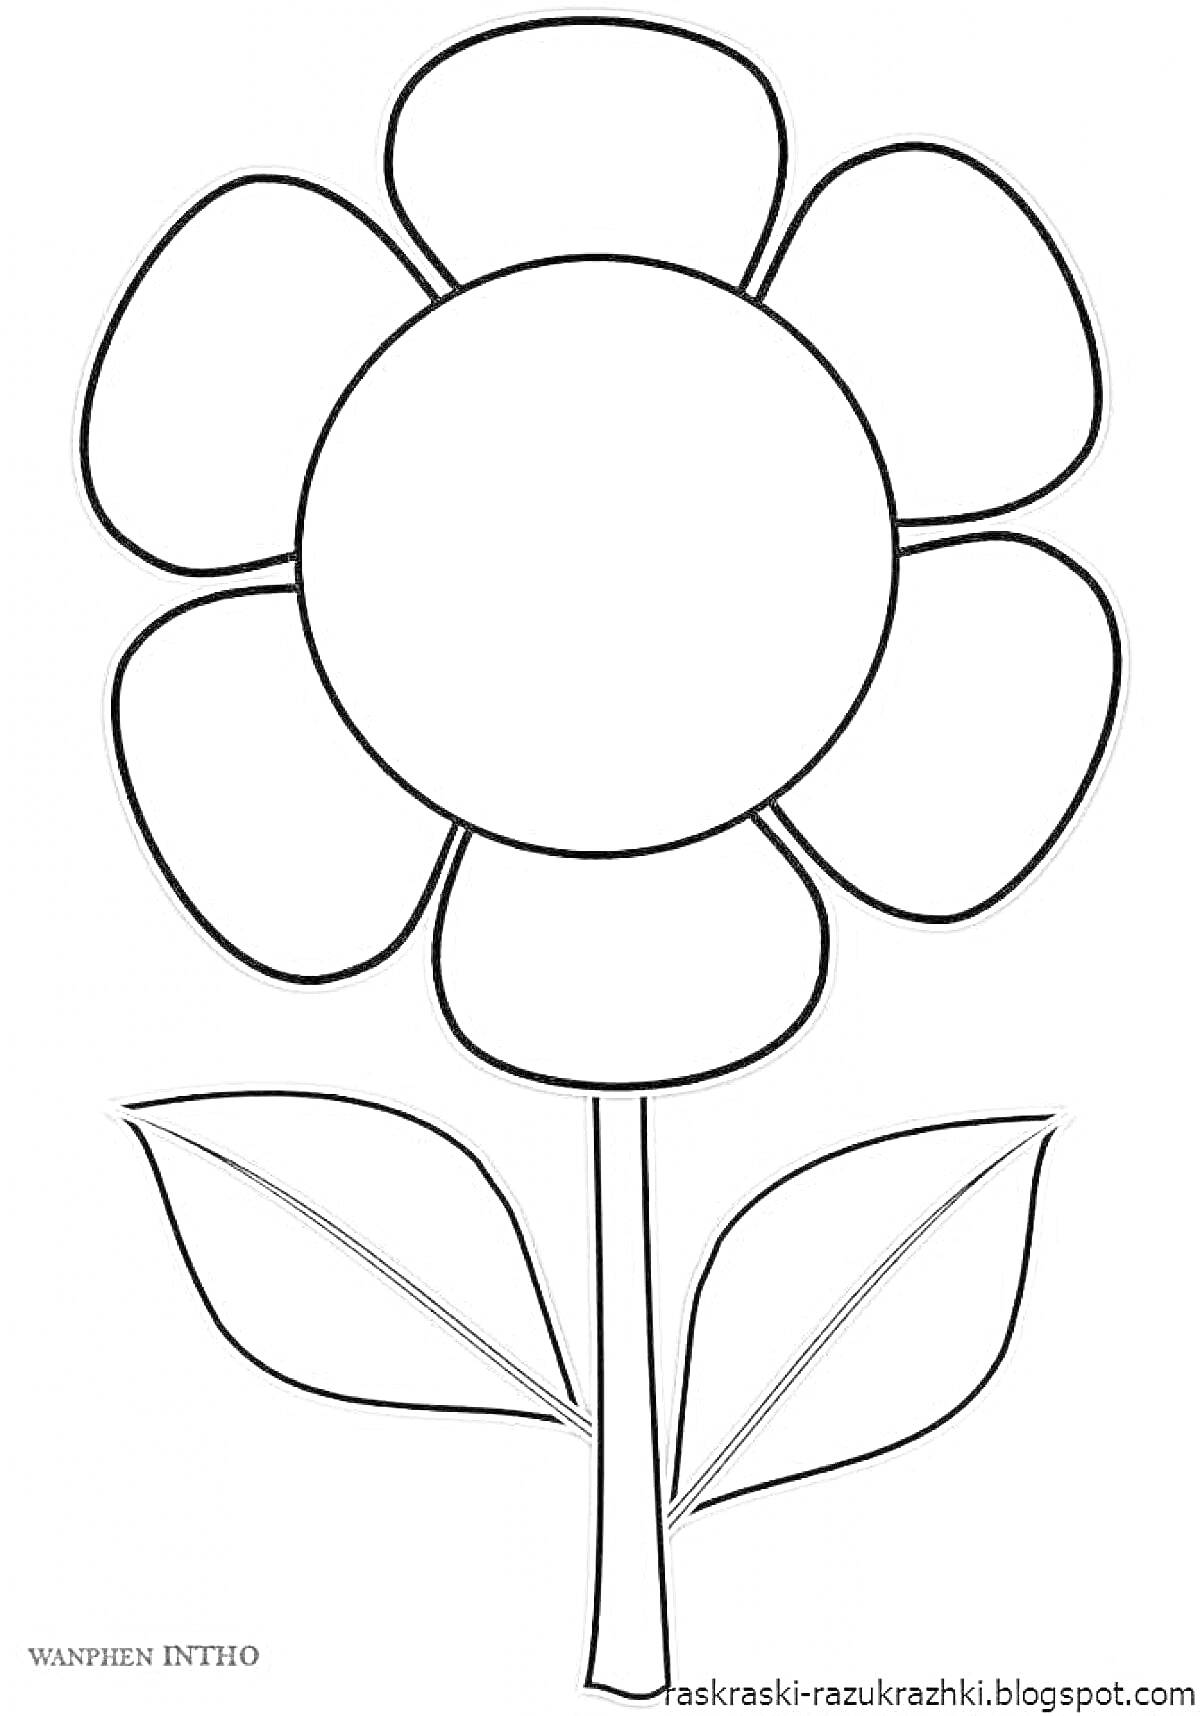 Раскраска Цветок с семью лепестками и двумя листьями